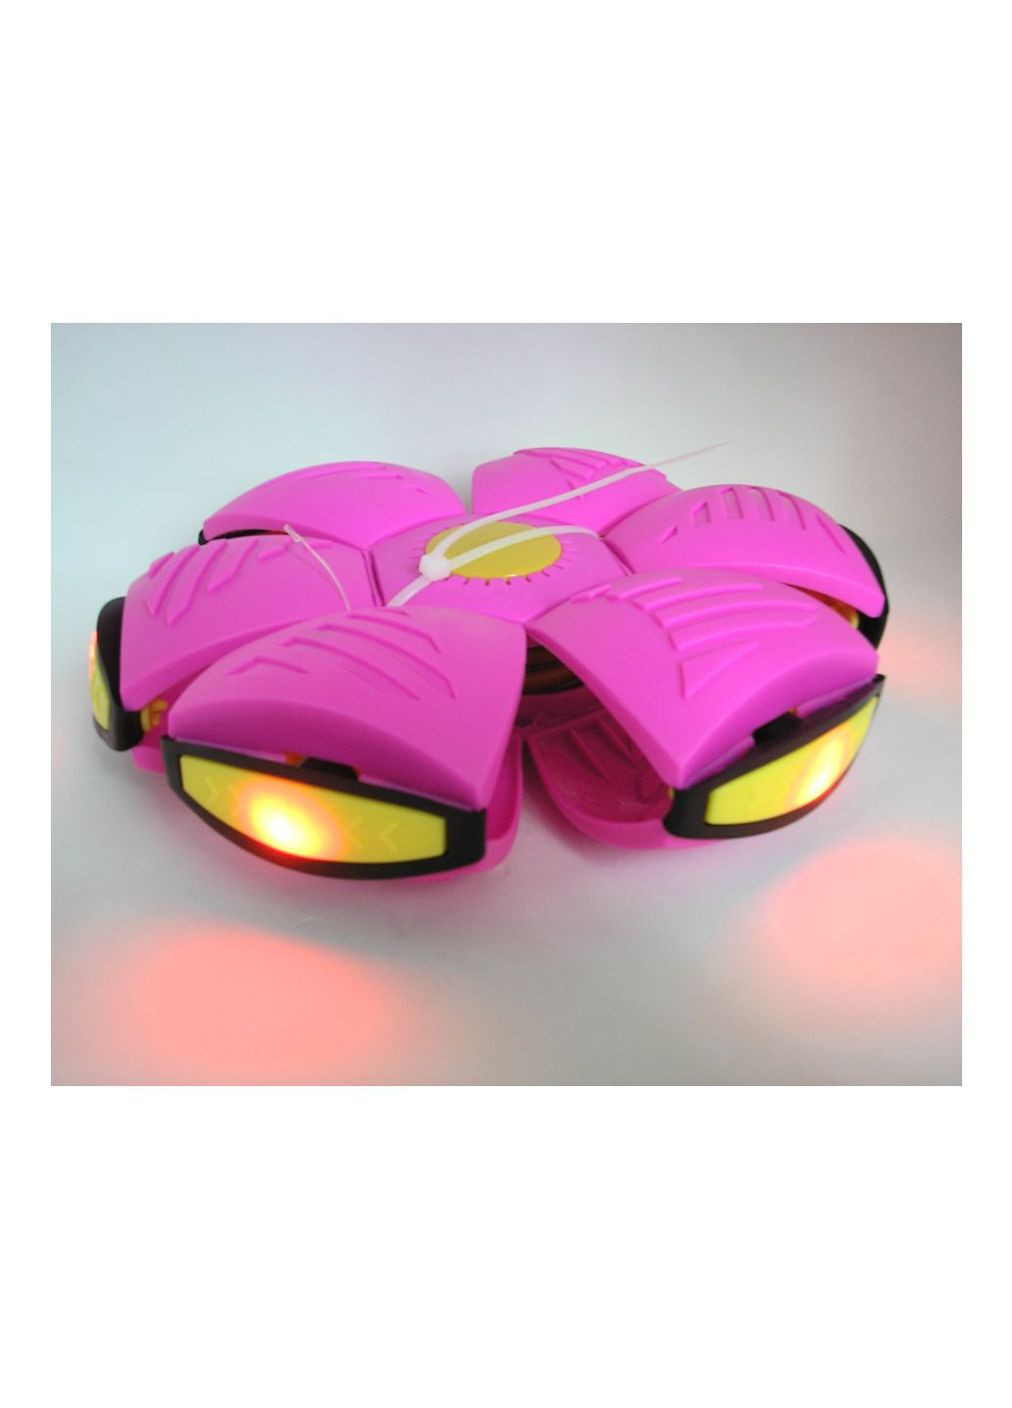 Складной игровой мячик фрисби розовый Flat Ball Disc мяч трансформер летающая тарелка светящаяся с 6 LED No Brand (272158258)